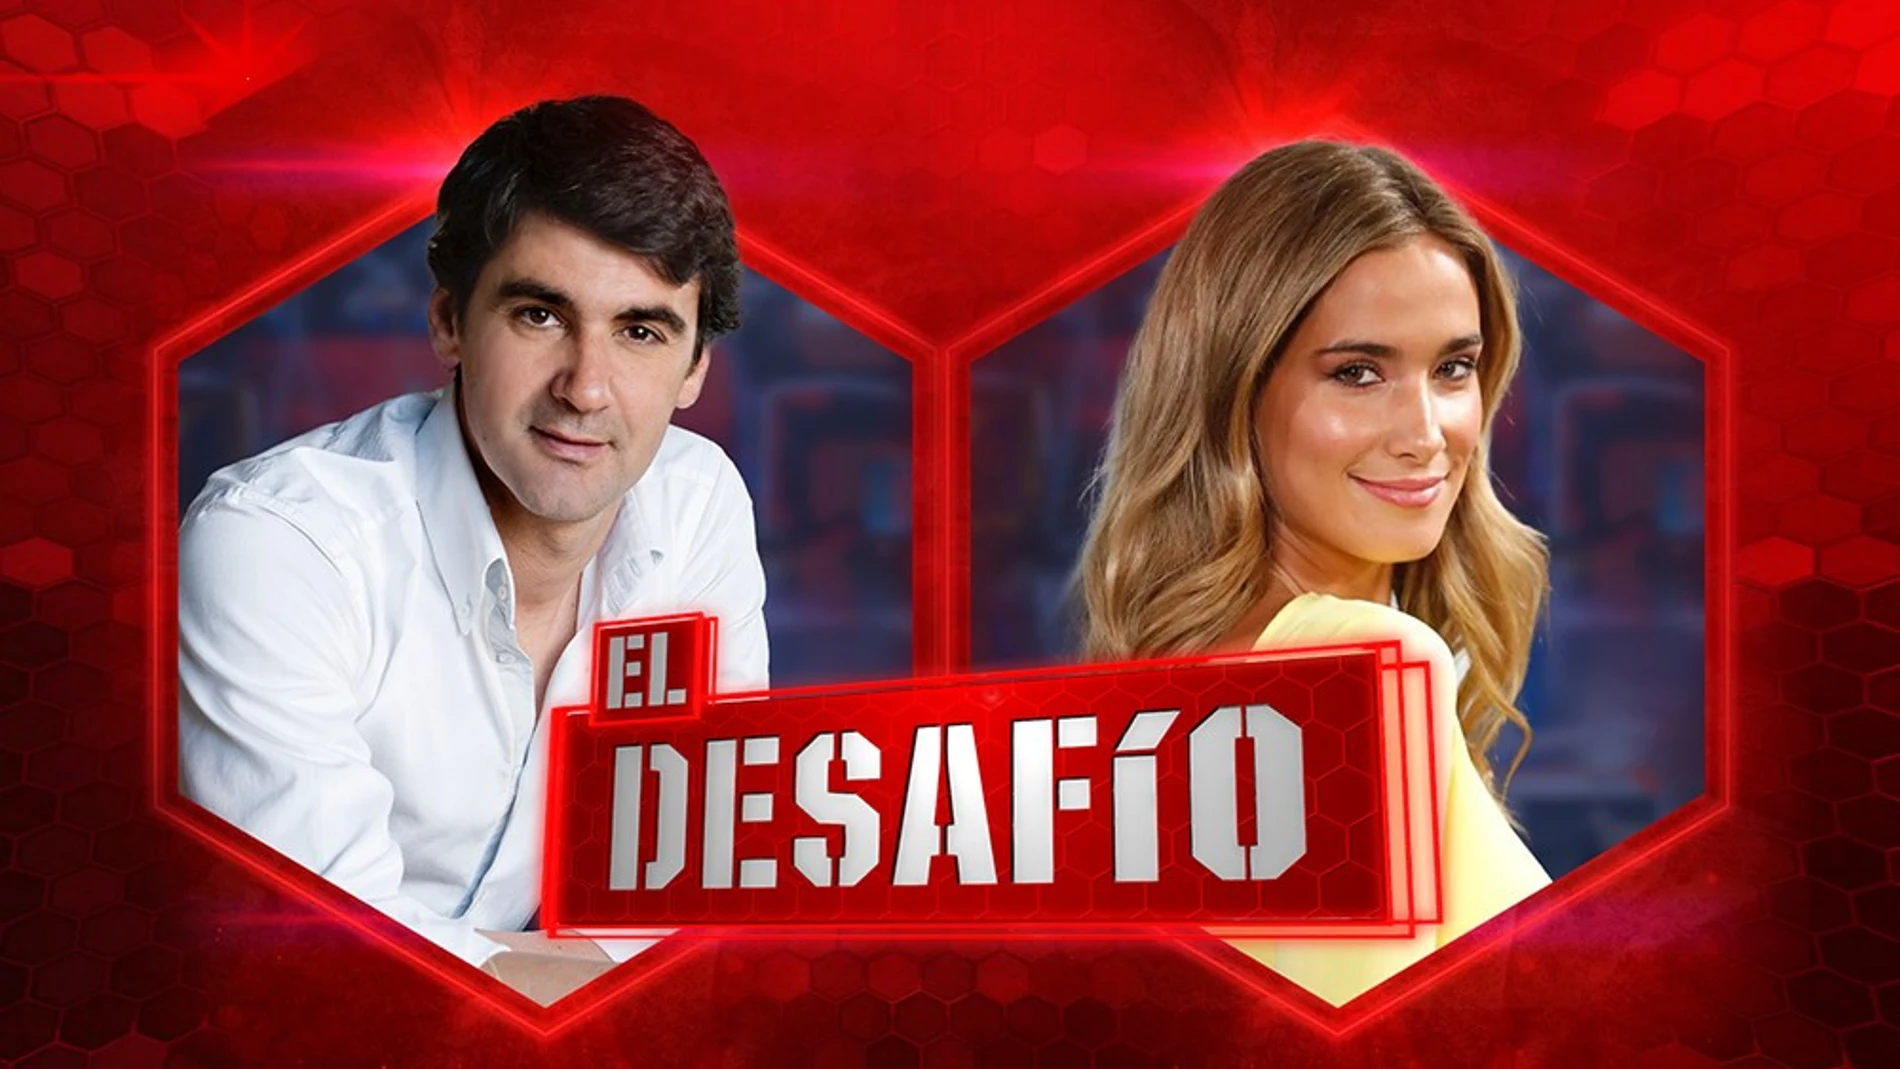 María Pombo y Jesulín de Ubrique concursantes de 'El Desafío' en su segunda temporada